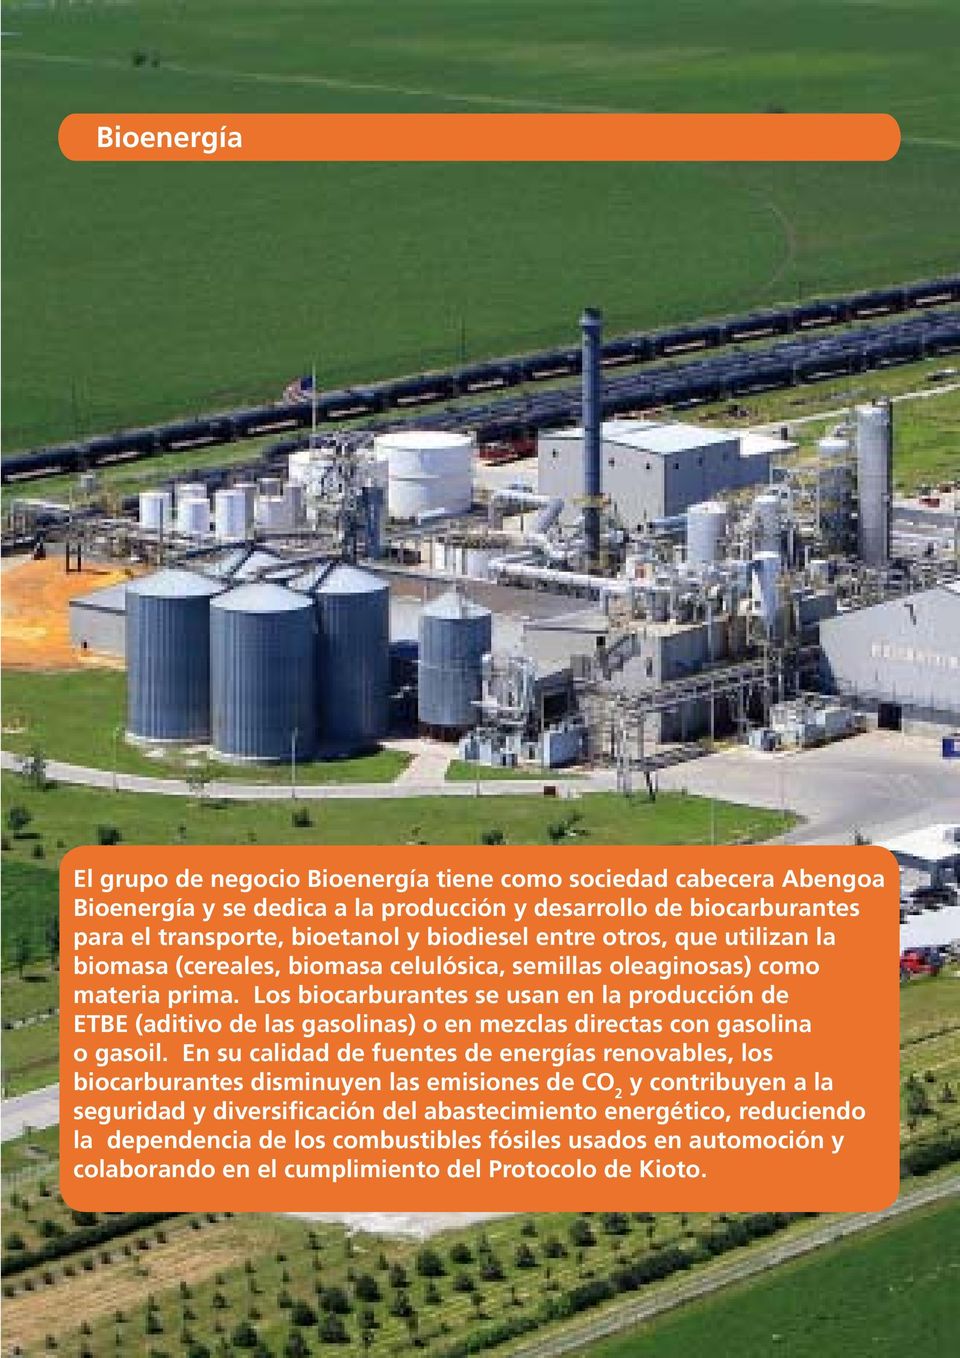 Los biocarburantes se usan en la producción de ETBE (aditivo de las gasolinas) o en mezclas directas con gasolina o gasoil.